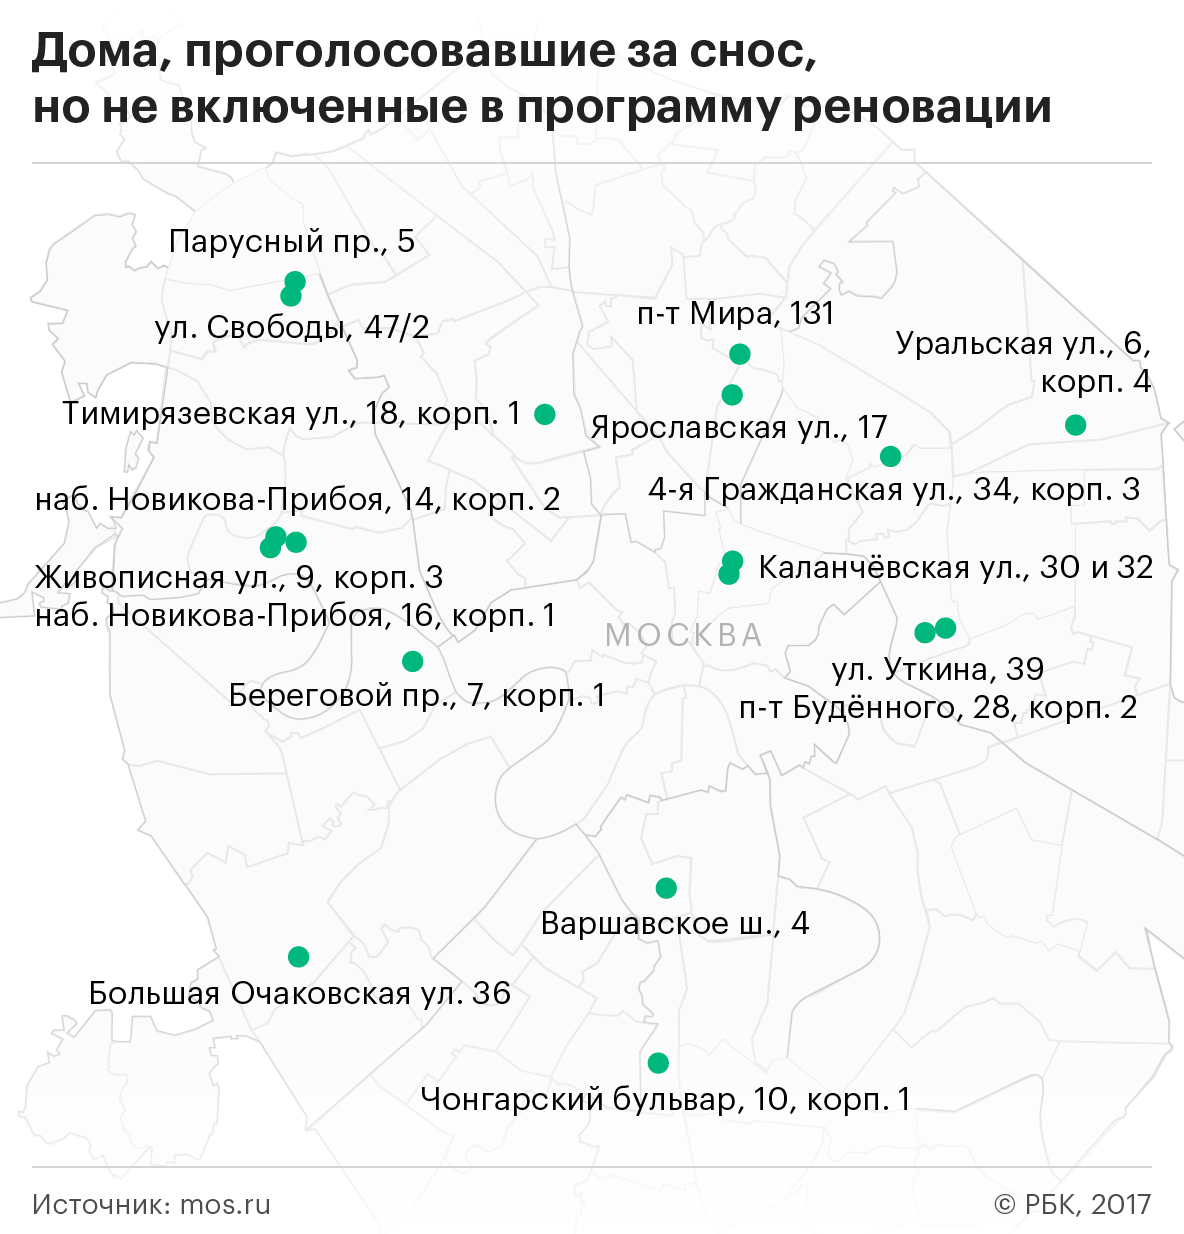 В программу реновации в Москве не вошли 18 проголосовавших за снос домов